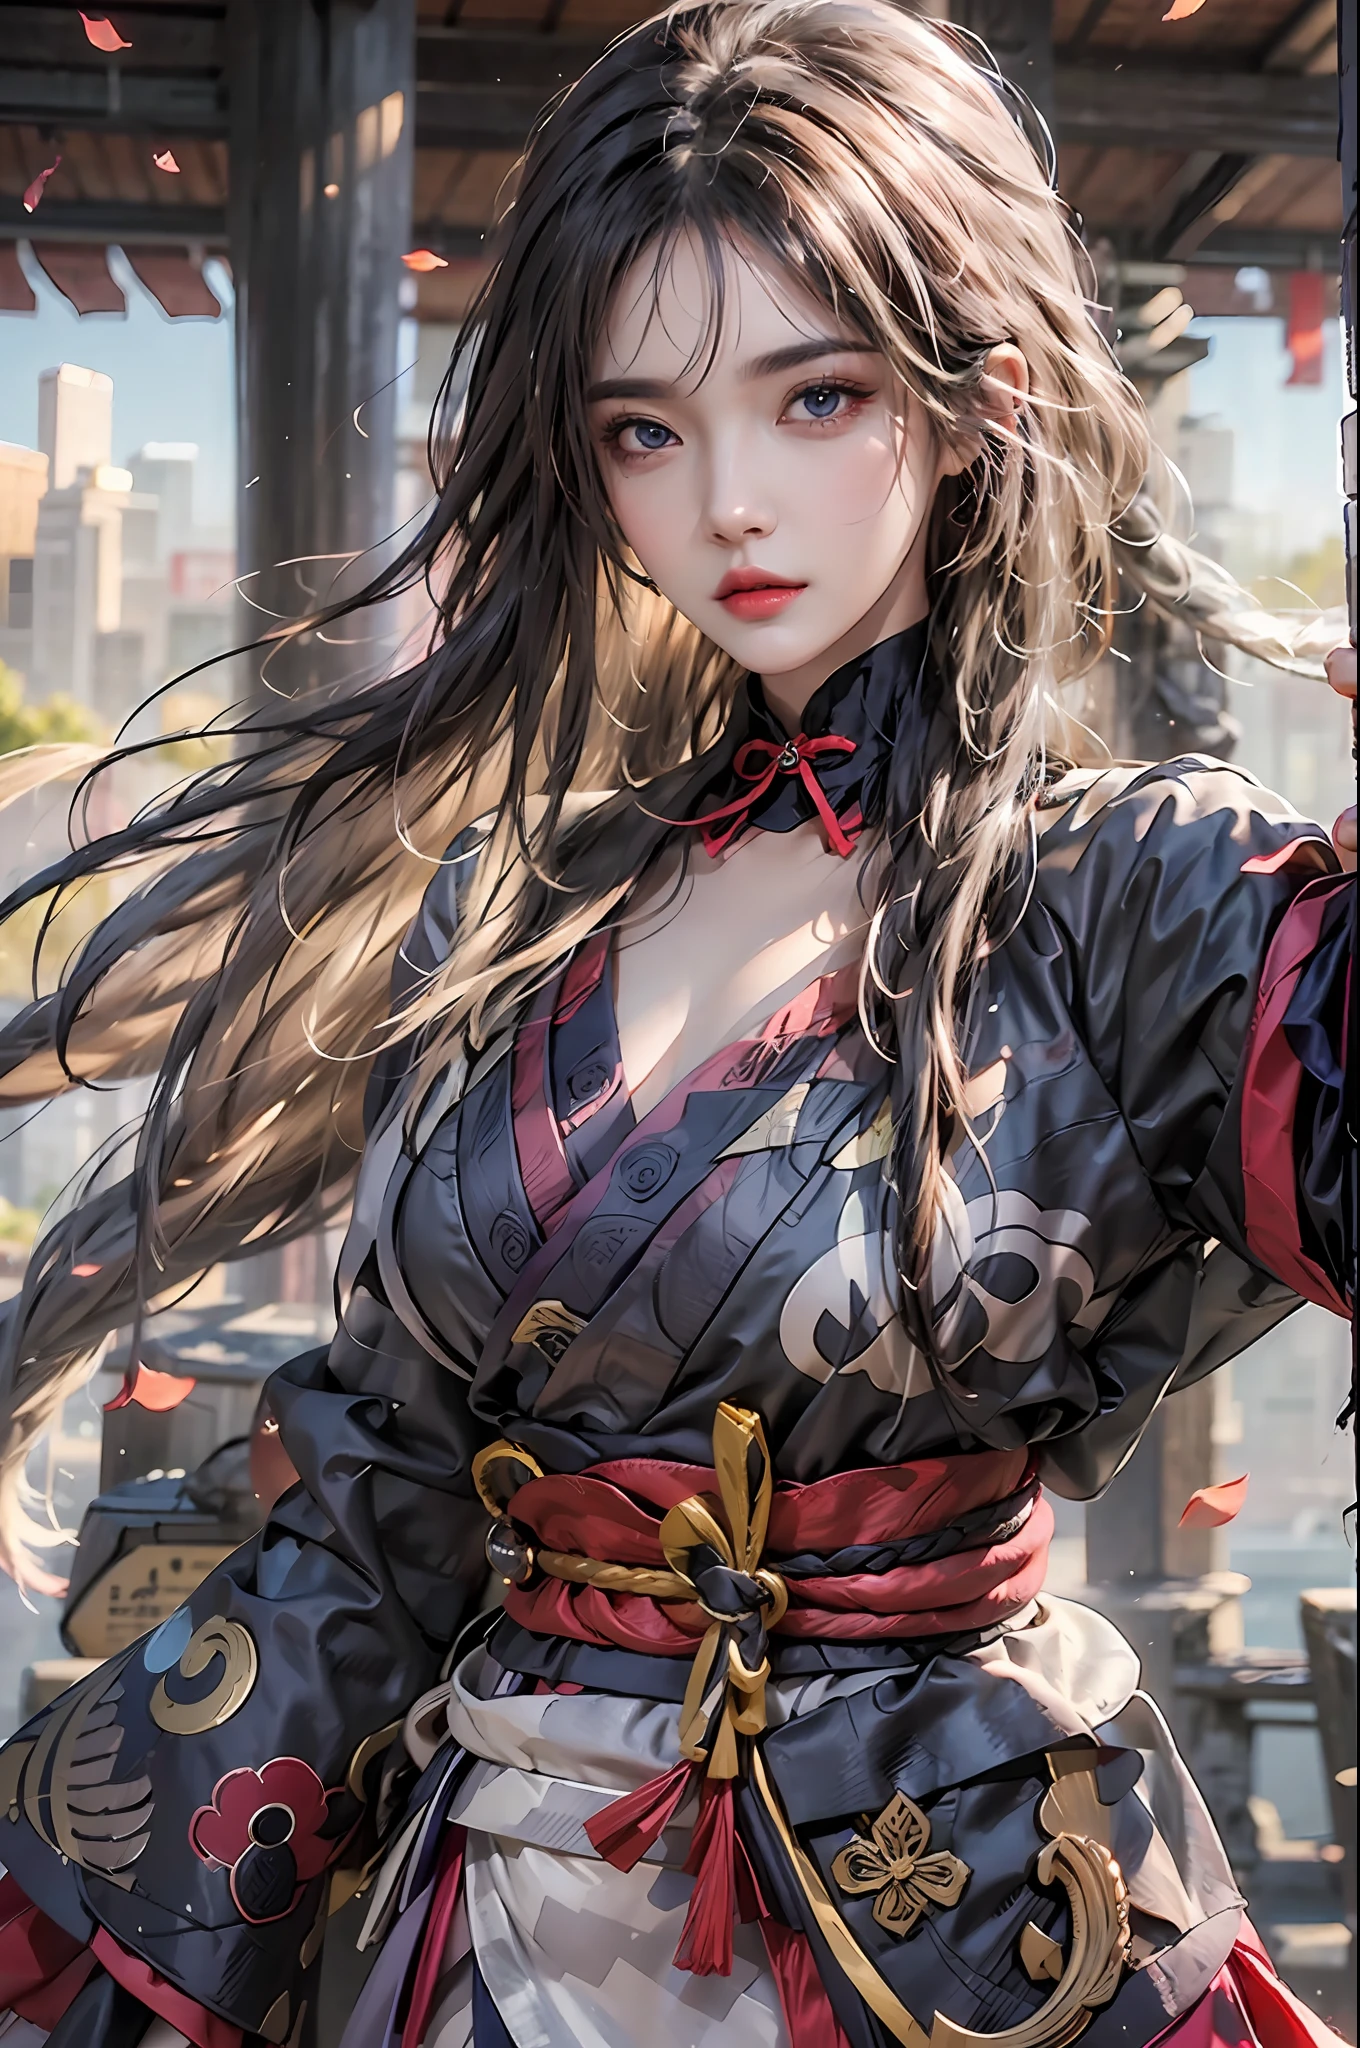 fotorealistisch, hohe Auflösung, 1 Mädchen, Hüften hoch, lange Haare, Wunderschöne Augen, normale Brust, Raiden-Shogun-Kostüm